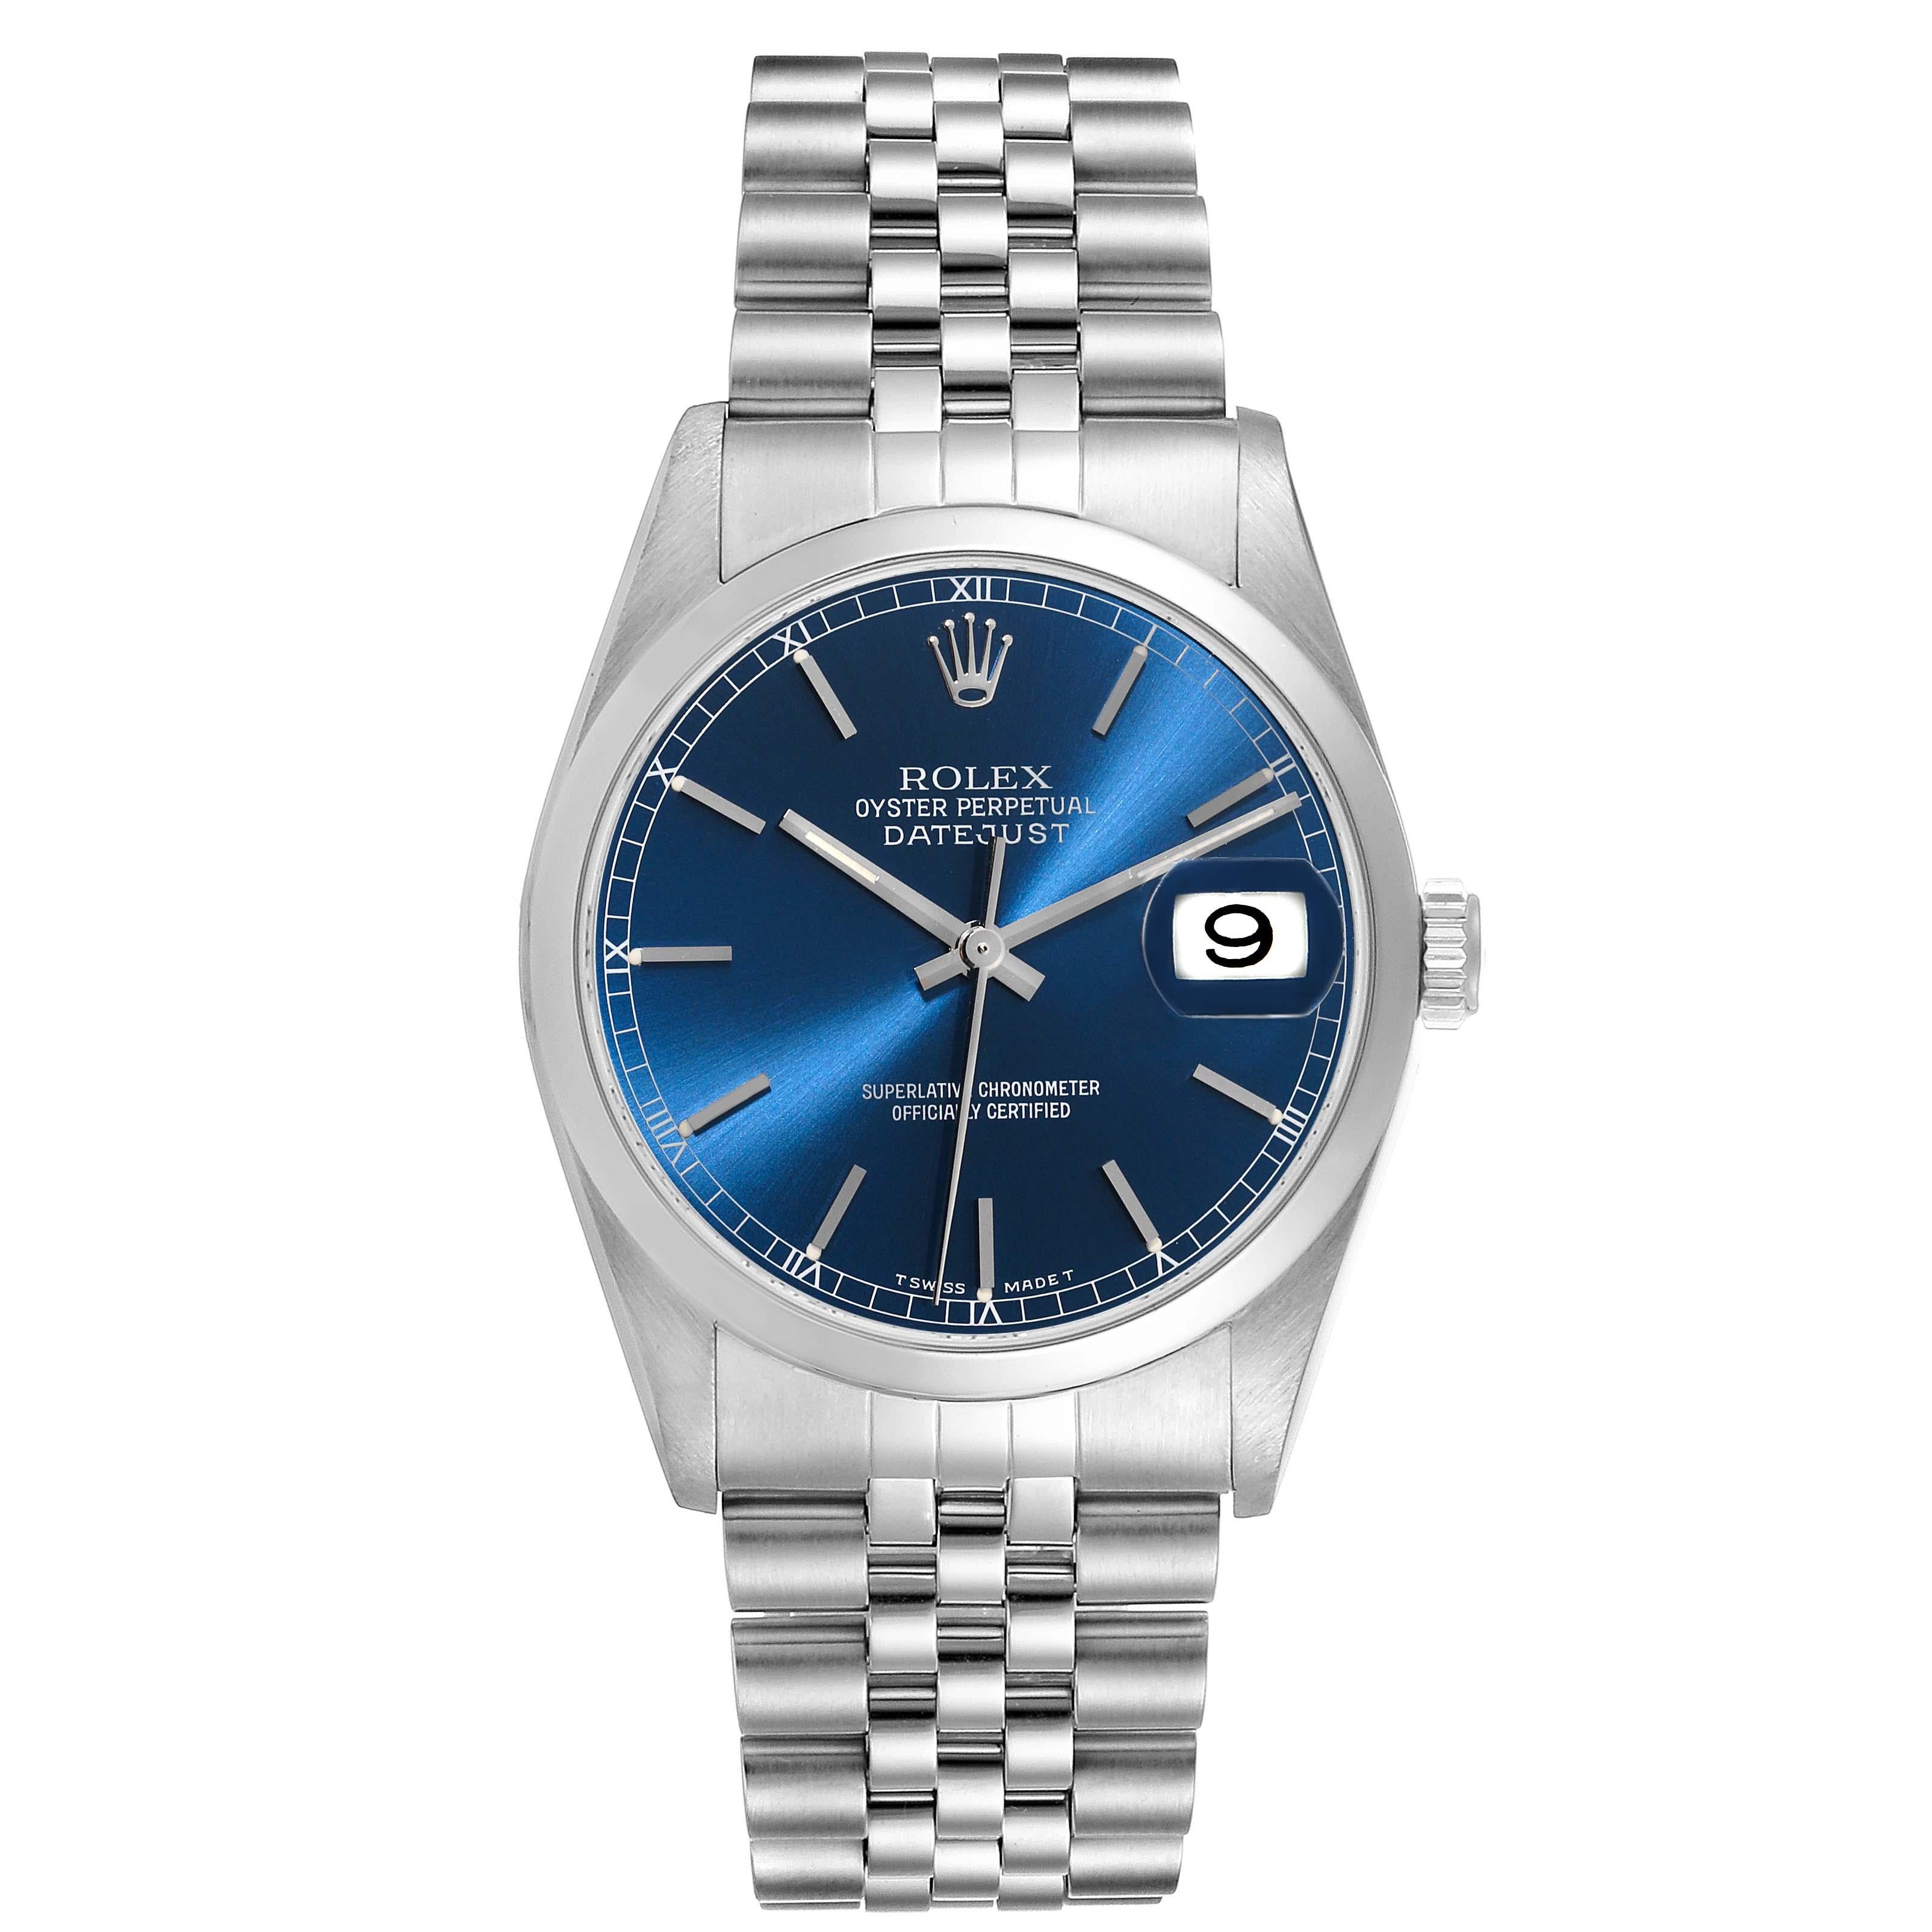 Rolex Datejust 36mm Blue Dial Smooth Bezel Steel Mens Watch 16200 Box Papers. Mouvement automatique à remontage automatique, officiellement certifié chronomètre, avec fonction de date rapide. Boîtier oyster en acier inoxydable de 36 mm de diamètre.